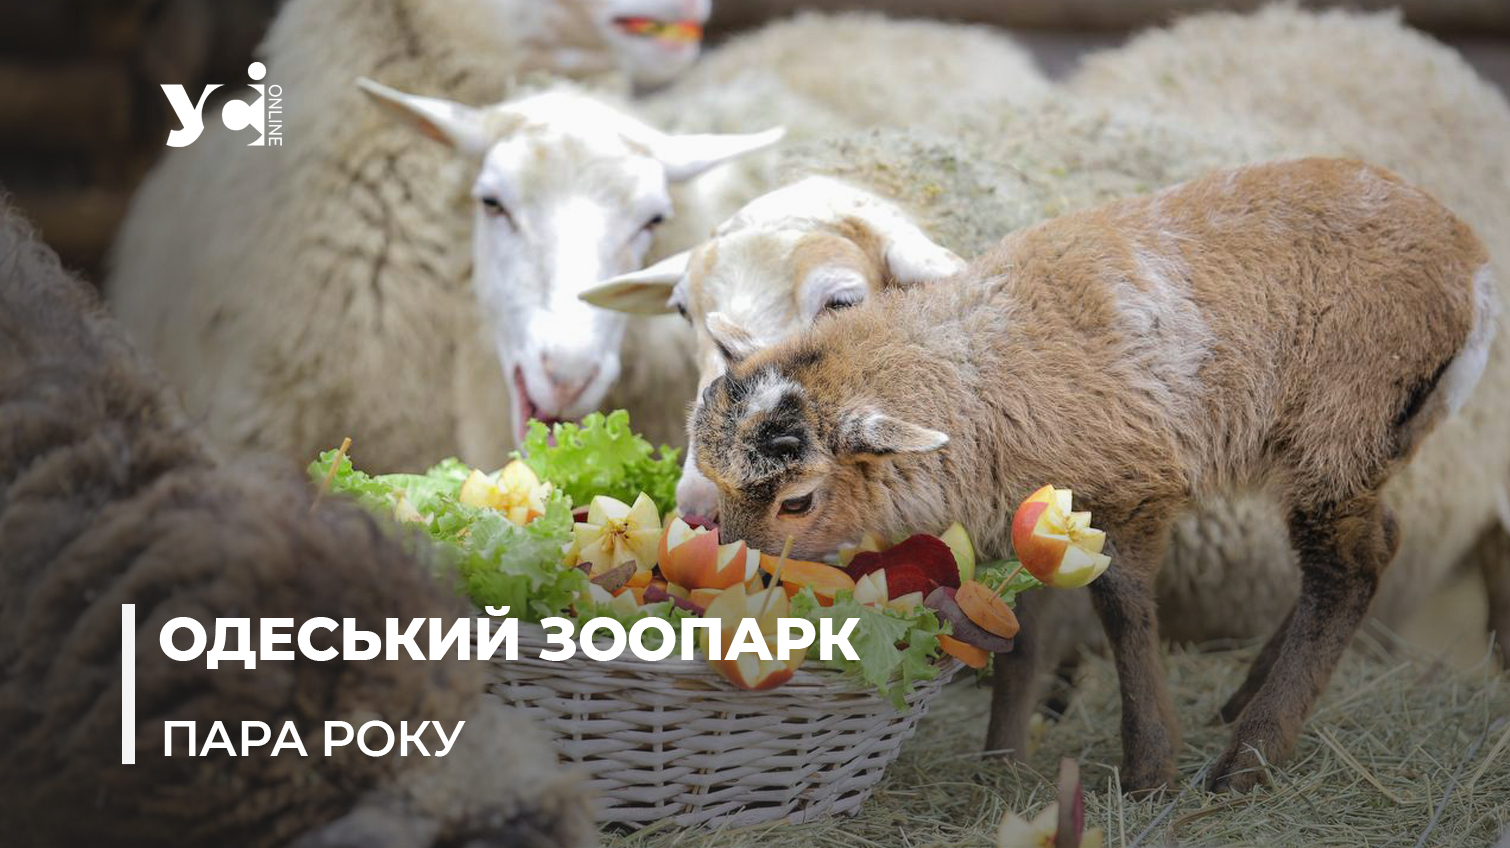 «Будь моїм бараном»: в Одеському зоопарку до Дня усіх закоханих обрали найромантичнішу пару (фото) «фото»